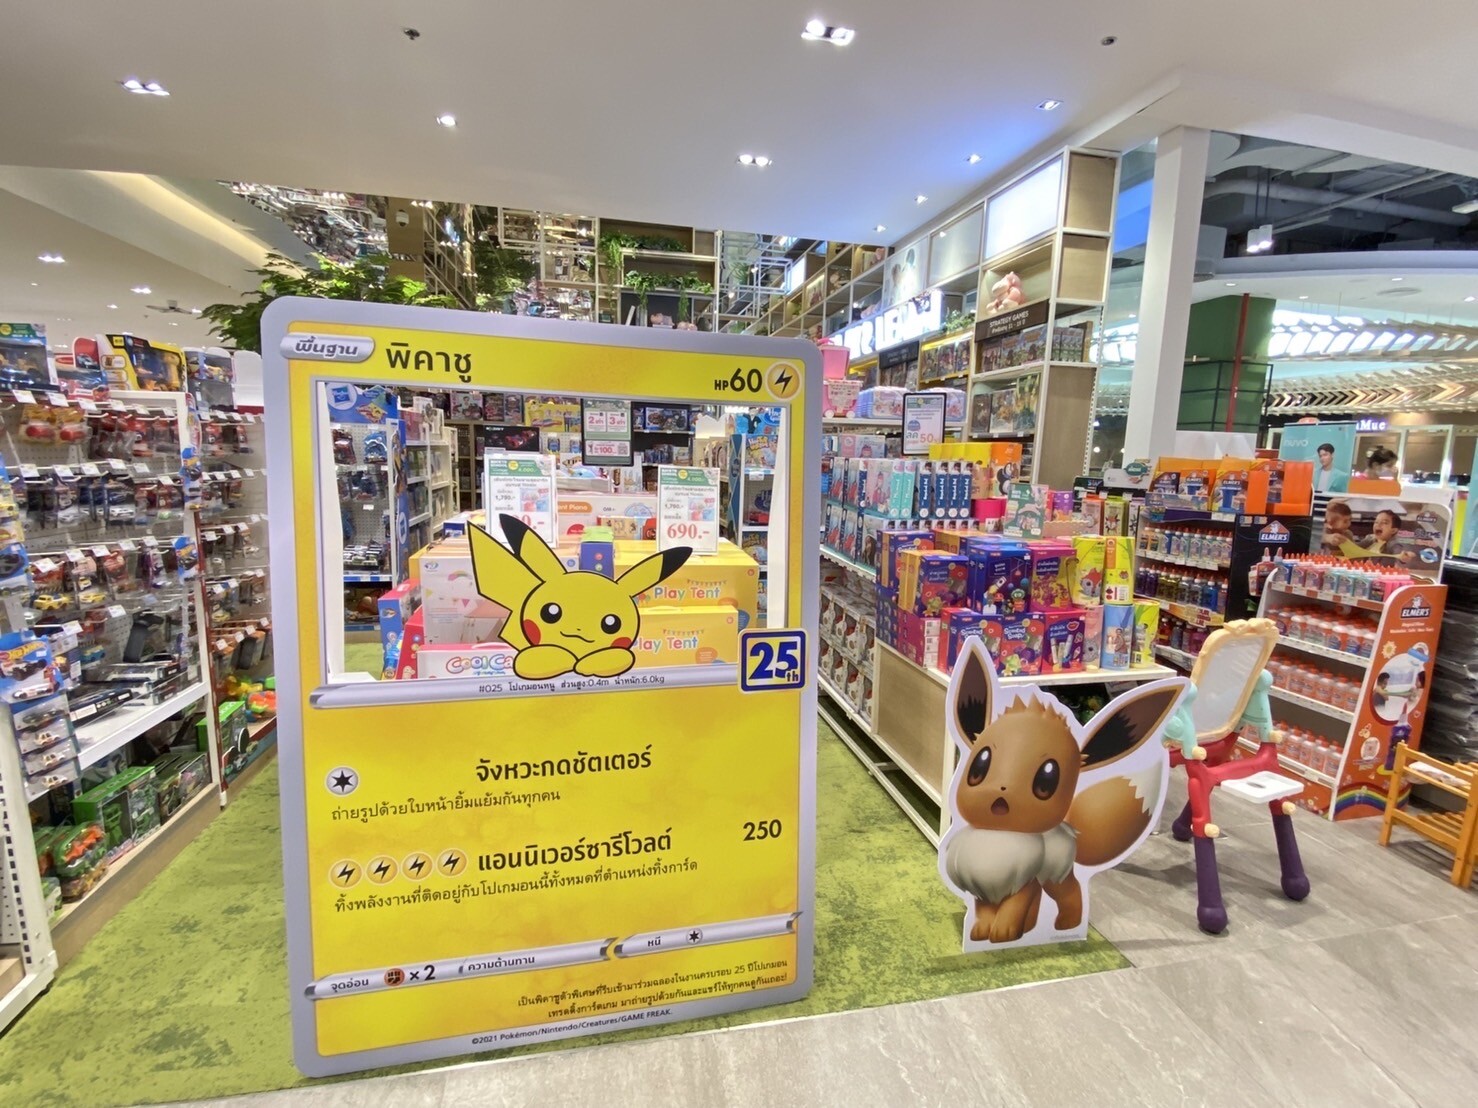 บีทูเอส ส่งโปเกมอน เสิร์ฟความสนุก ถึงหน้าร้าน กับ "B2S X Pokemon"เทรดดิ้งการ์ดเกม ครั้งแรกในไทย